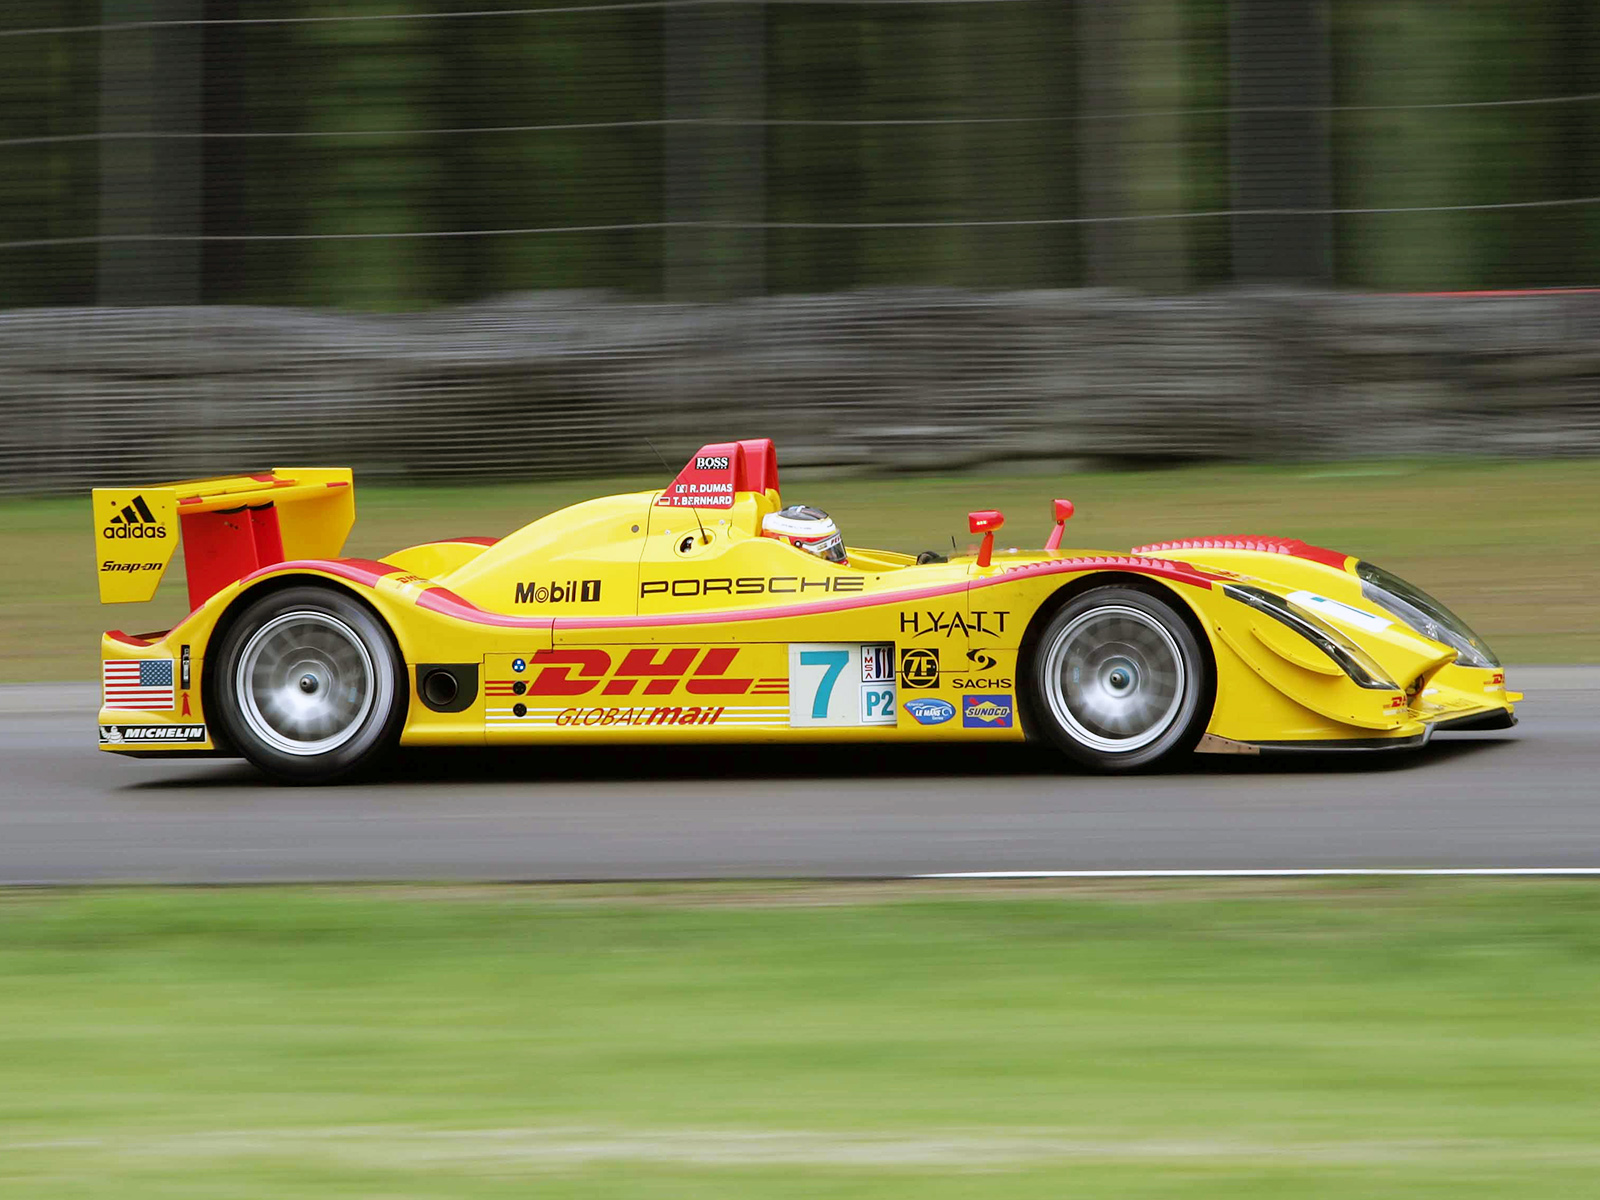 2006, Porsche, Rs, Spyder, 9r6, Lmp2, Race, Racing, Le mans Wallpaper